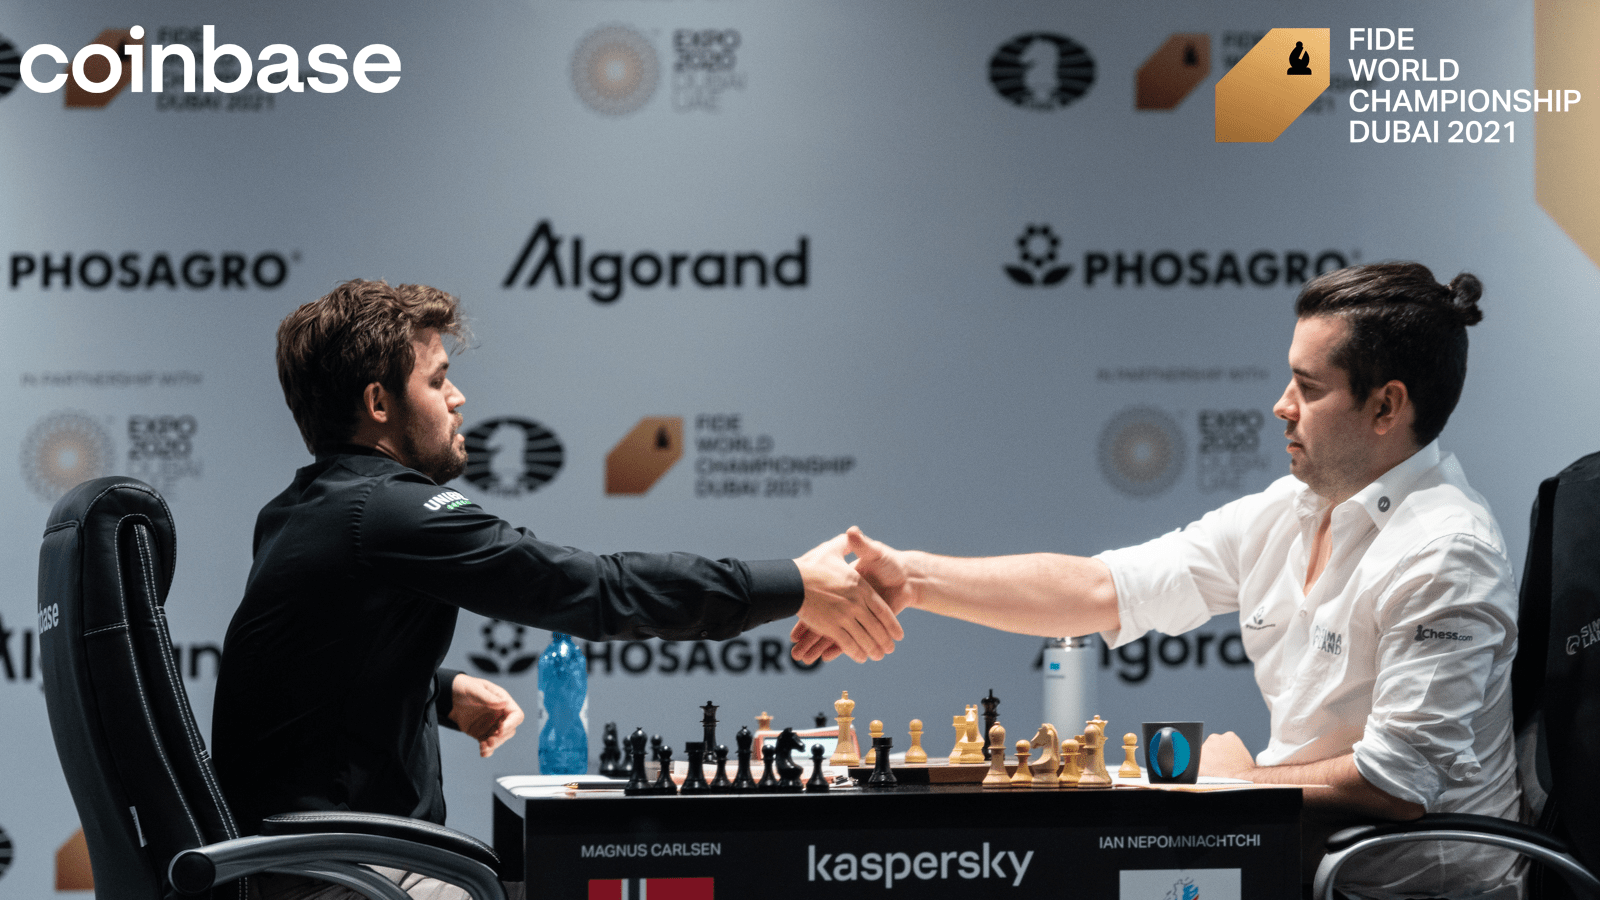 O Mundo do Xadrez - Carlsen vence o Campeonato Mundial de xadrez